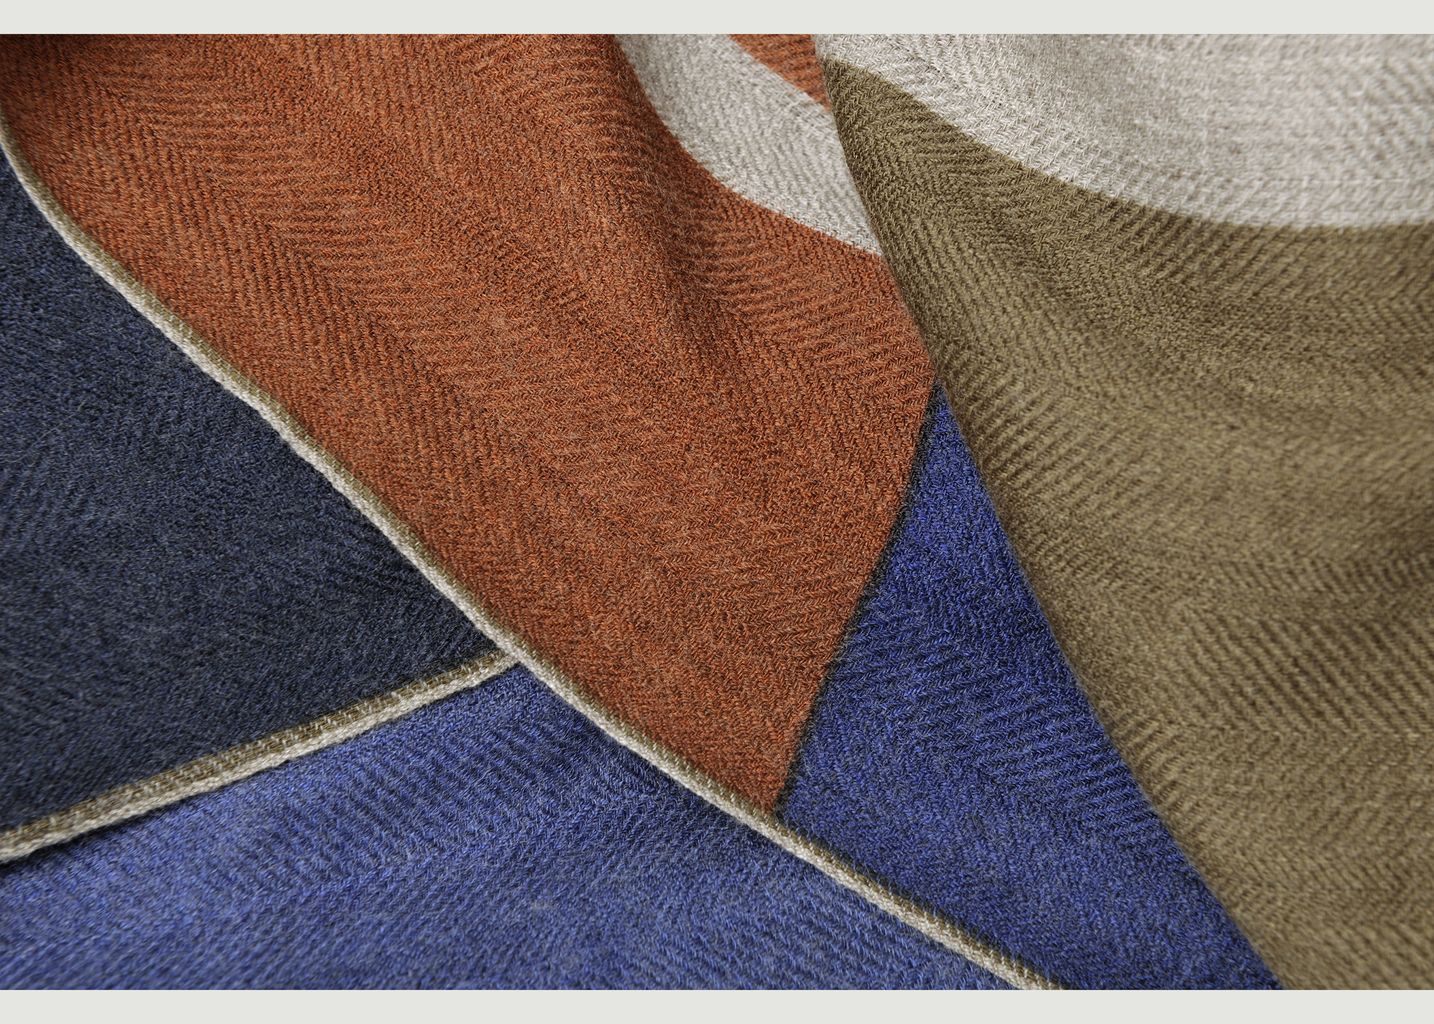 N°451 wool striped scarf - Moismont